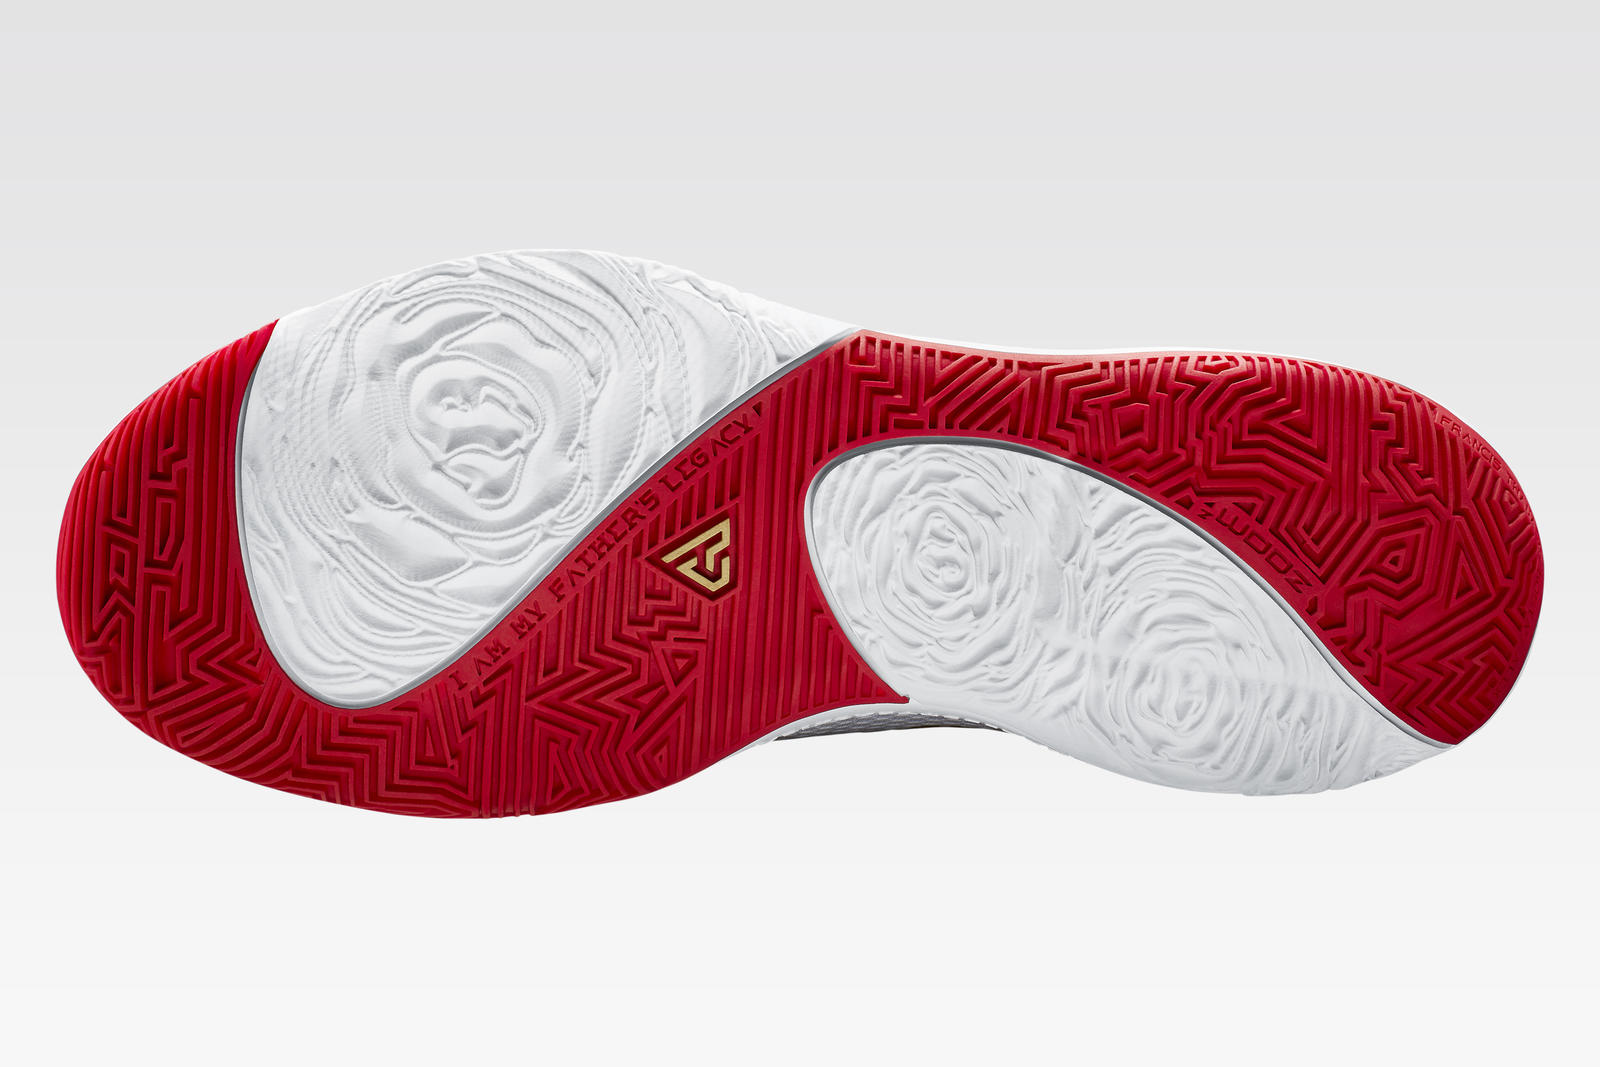 Giannis Antetokounmpo's Third Nike Signature Shoe Unveiled